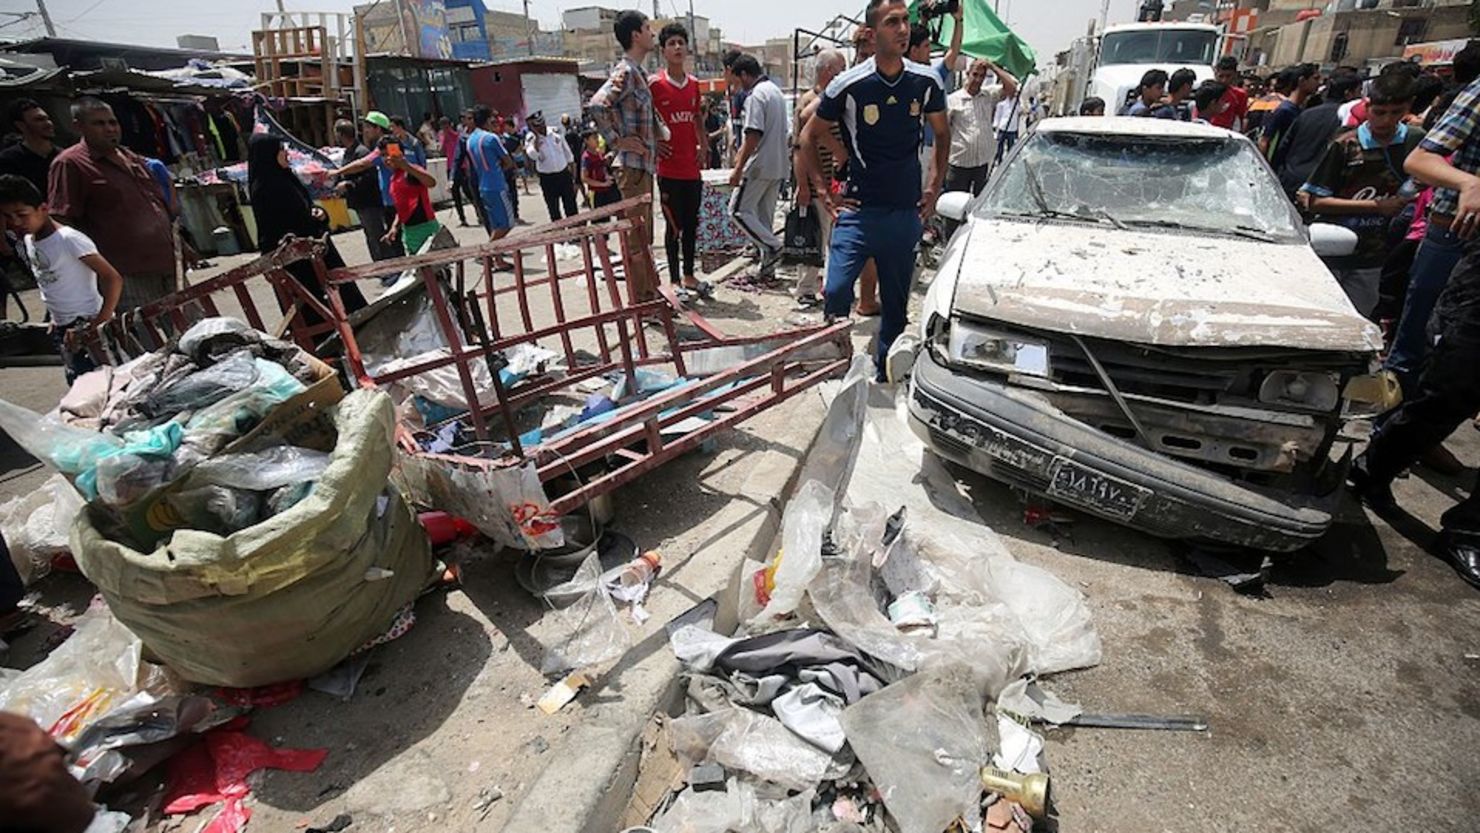 El atentado ocurrió en un barrio chiita de la capital iraquí (AHMAD AL-RUBAYE/AFP/Getty Images).